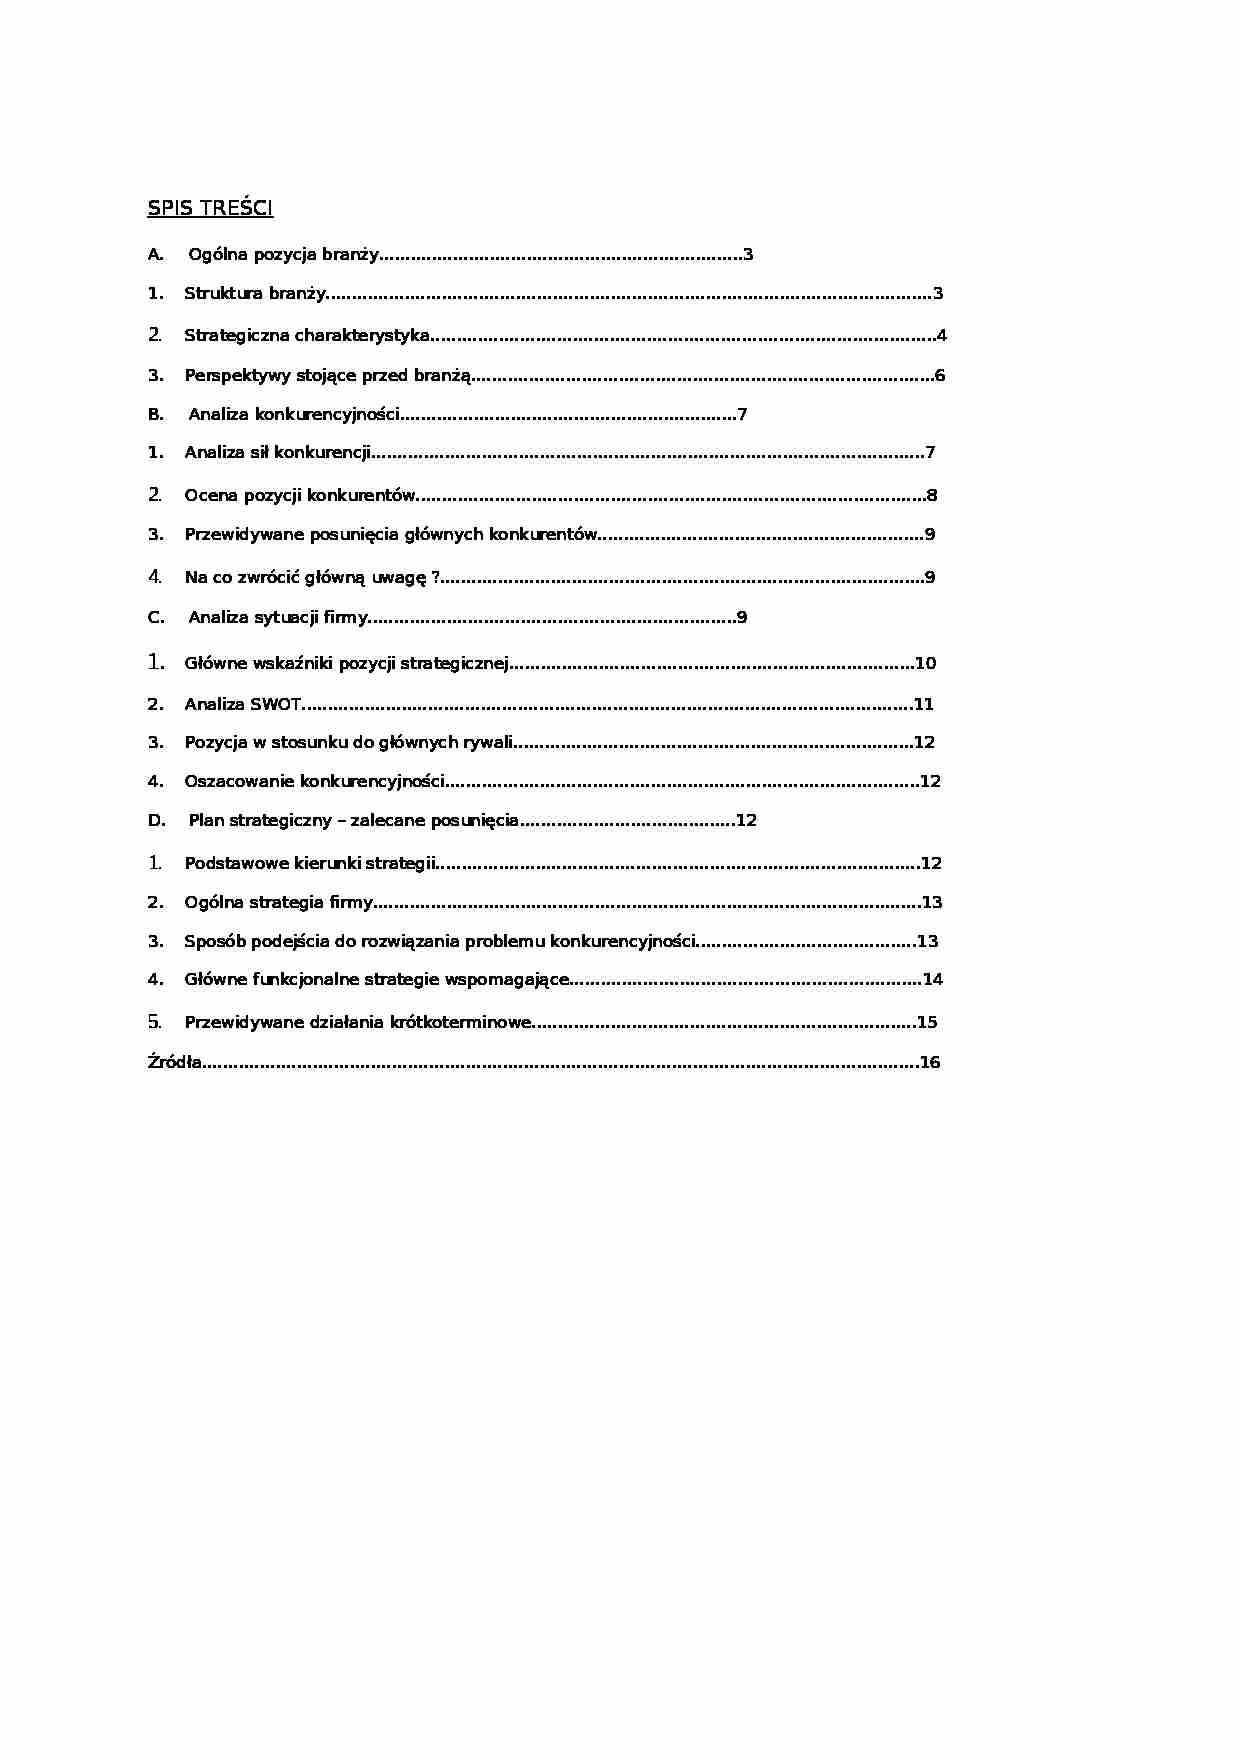 Analiza strategiczna firmy budowlanej - Analiza SWOT - strona 1